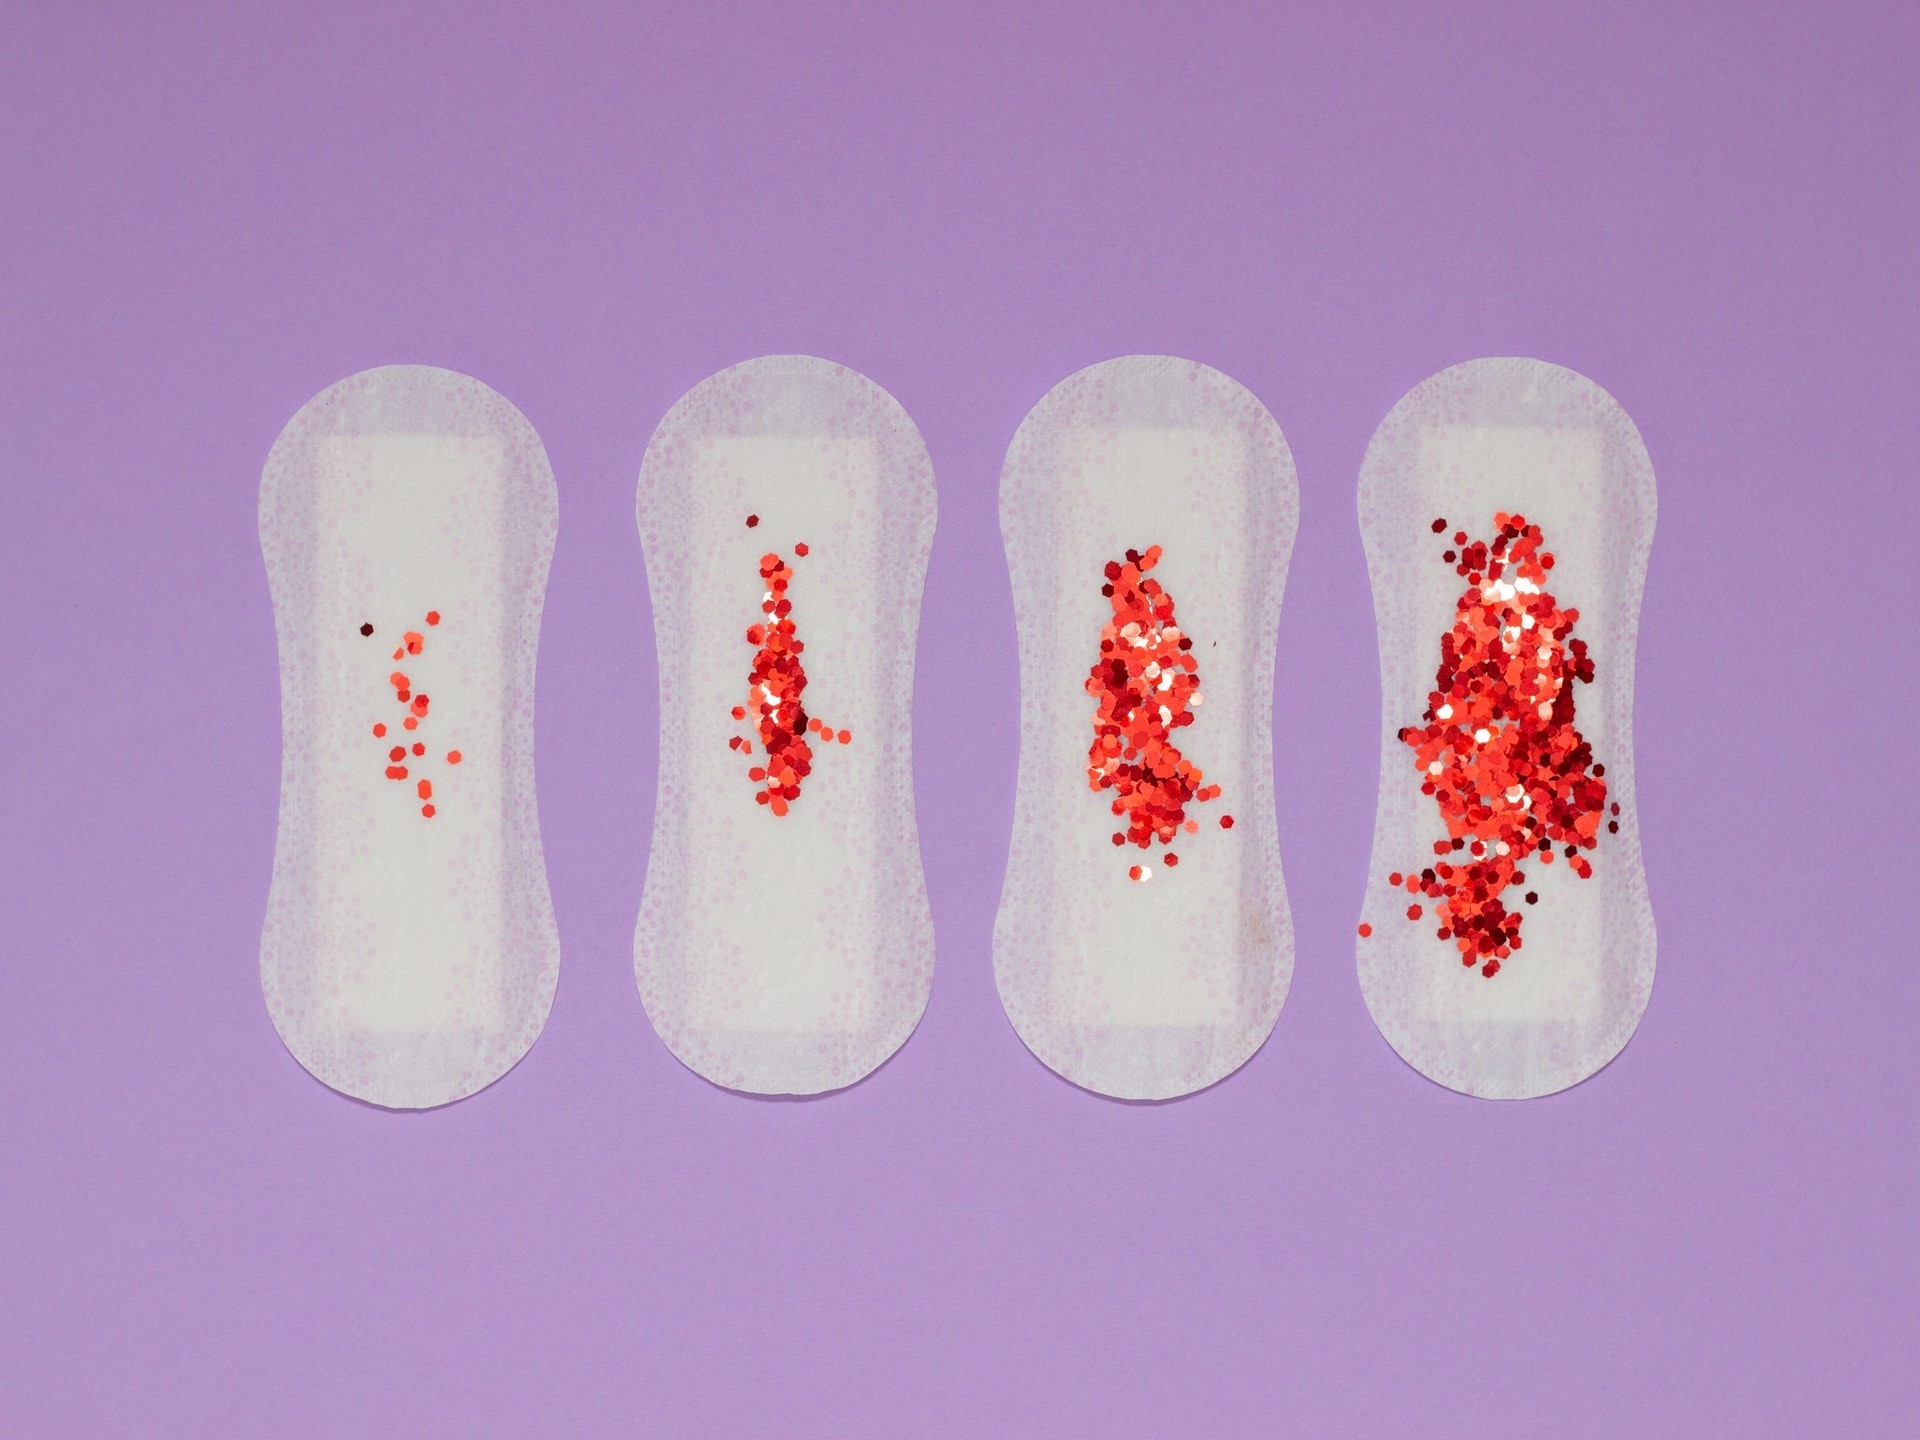 50% das brasileiras observaram algum tipo de alteração menstrual na pandemia, diz estudo (Foto: Ann Zzz/Pexels)